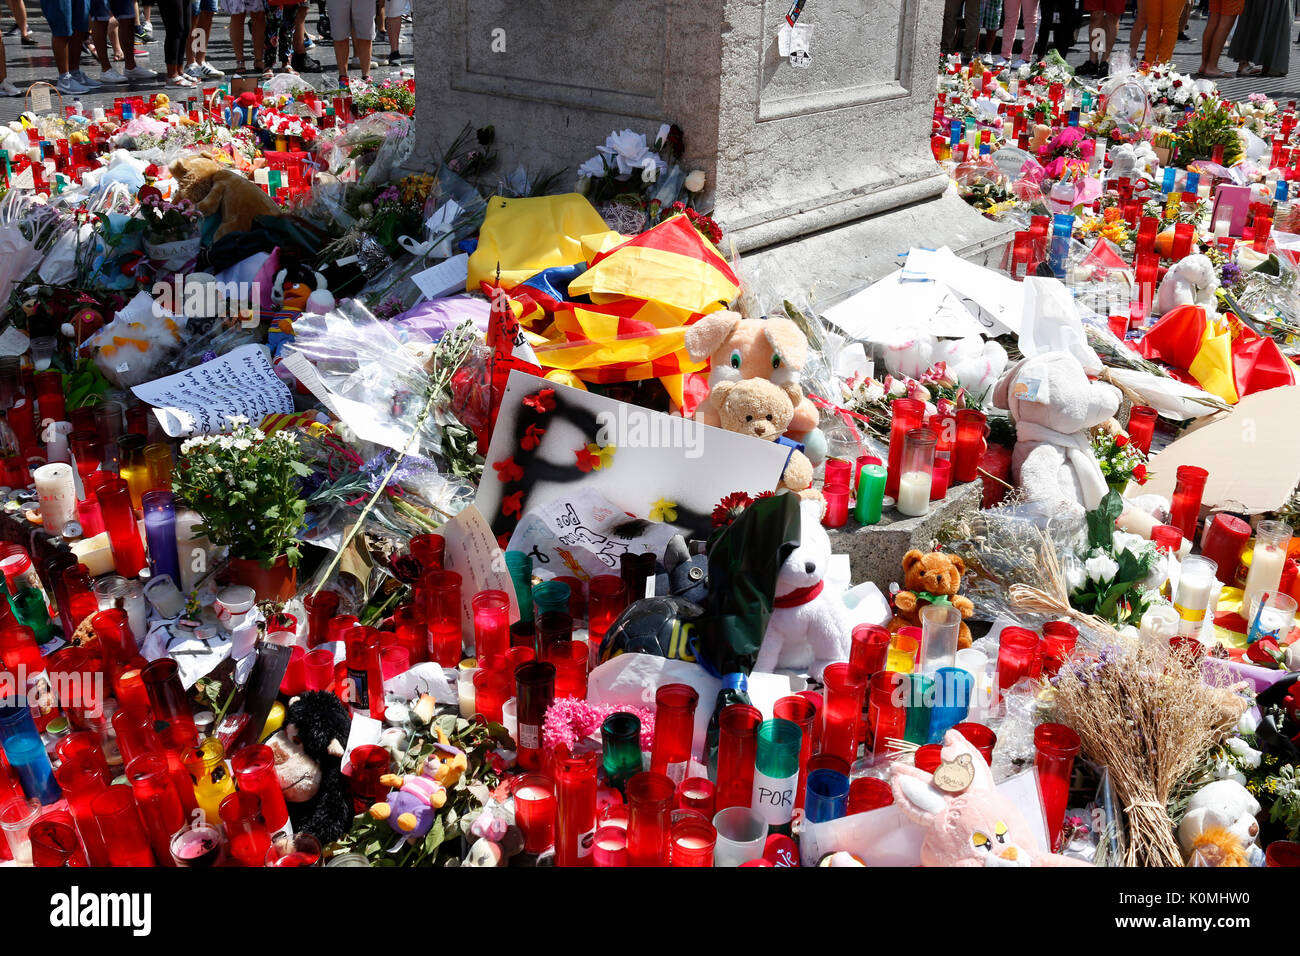 BARCELONA/Spanien - 21. AUGUST 2017: Menschen auf La Rambla in Barcelona, wo 17 August 2017 wiedervereinigt hat einen terroristischen Angriff, so dass Tribut an die mindestens 15 Todesopfer und über 120 Verletzte. Stockfoto